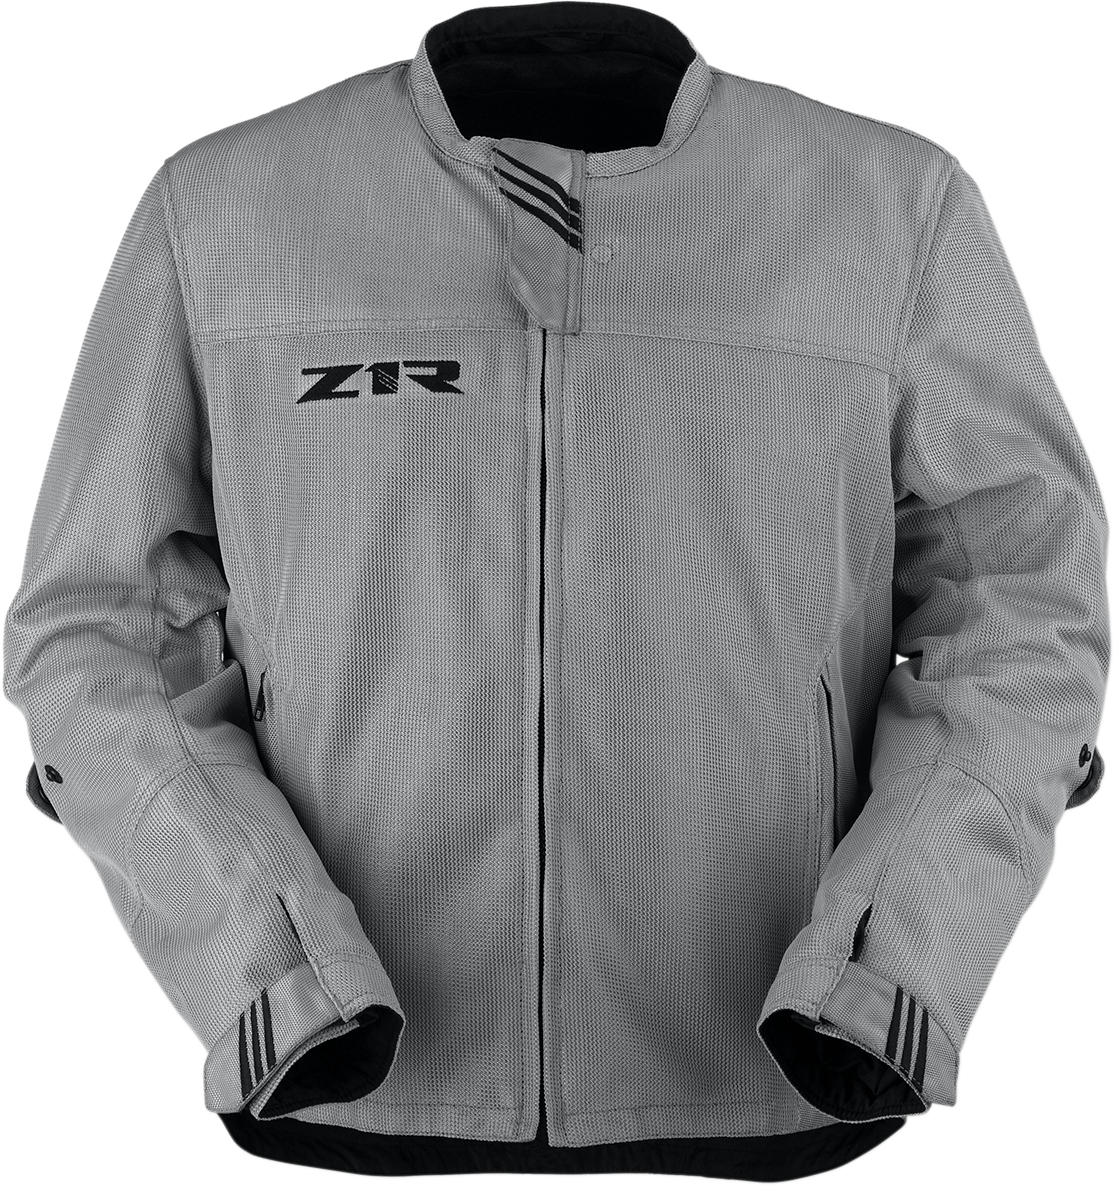 Z1R Gust Mesh Jacket - Gray - Medium 2820-4926